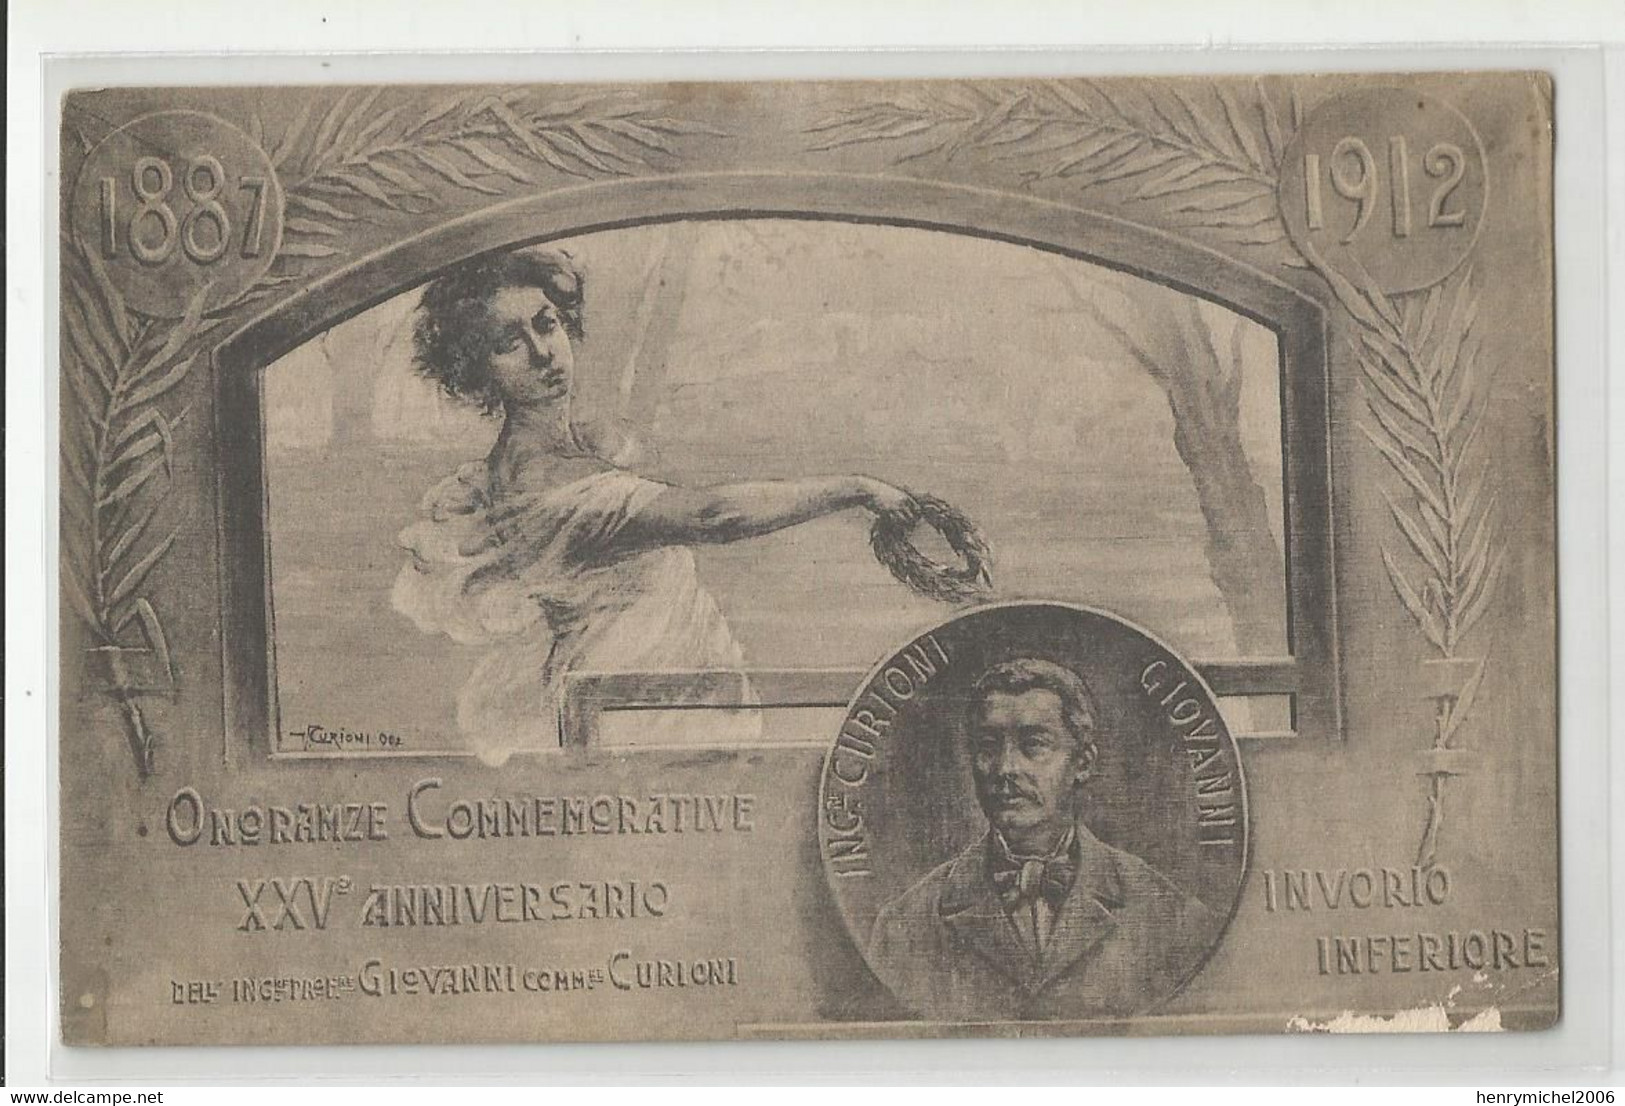 Italie - Italia - Italy - Piemonte - Novara Invorio Inferiore 1897 -1912 Curioni 25e Anniversario Femme Commemorative - Novara